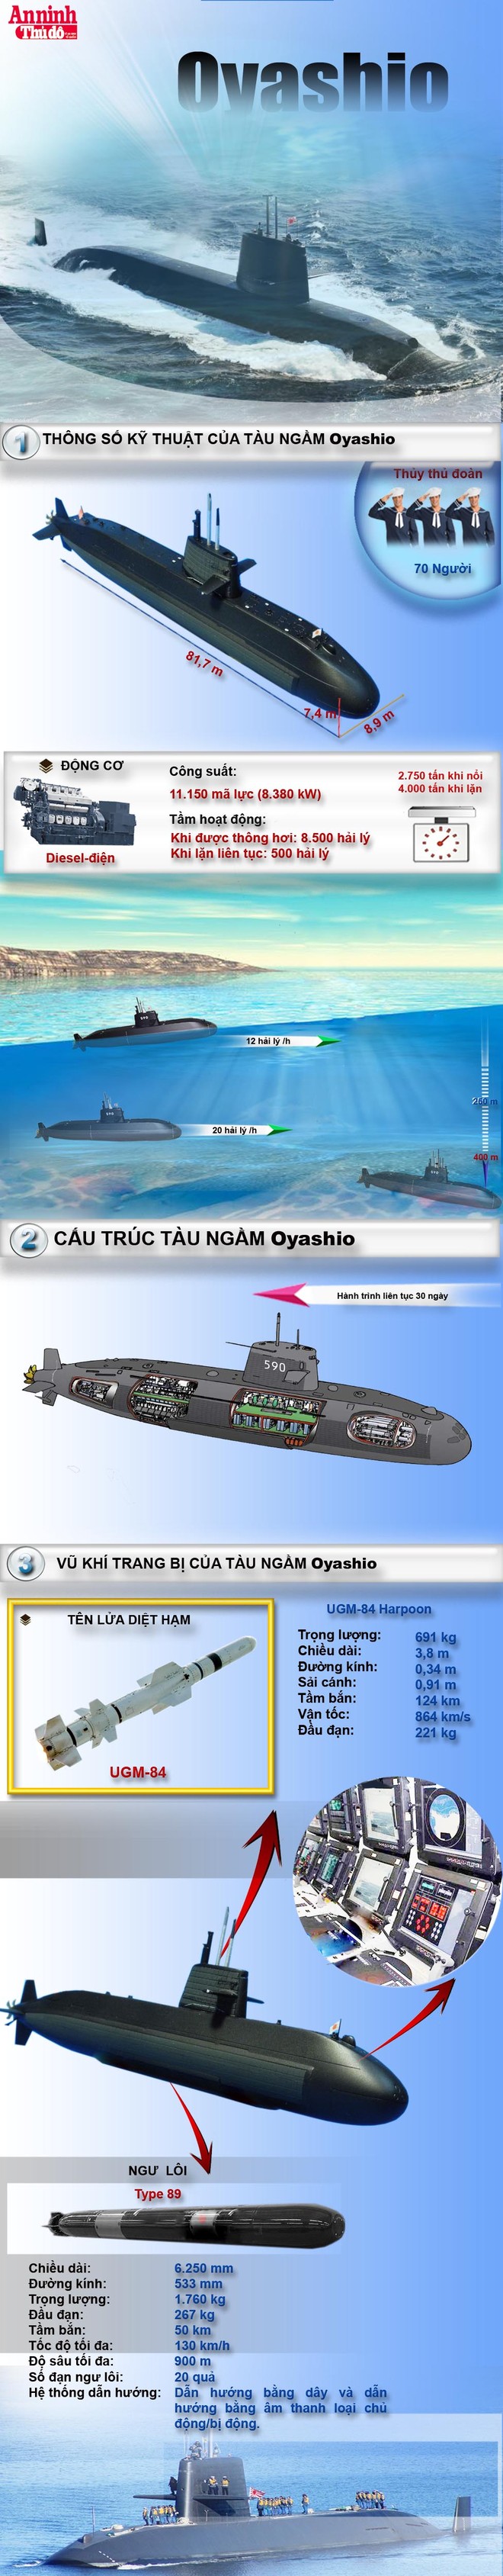 [Infographic] Tàu ngầm sát thủ lớp Oyashio của Nhật Bản sắp ghé Việt Nam ảnh 1